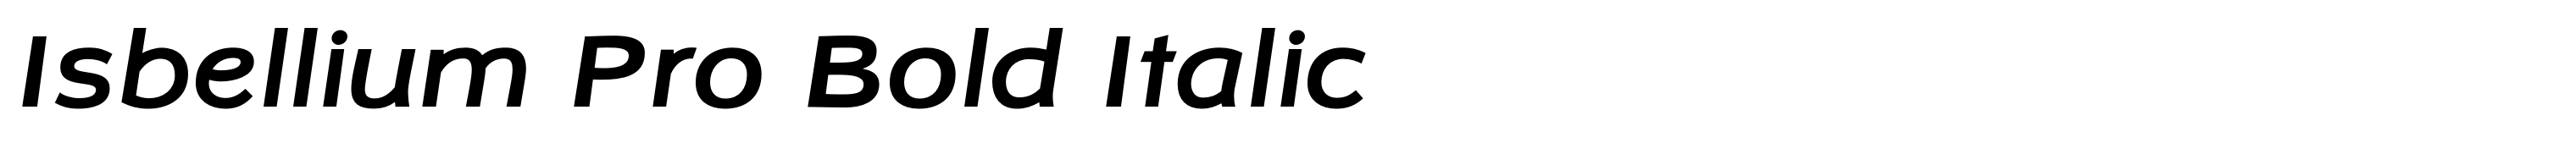 Isbellium Pro Bold Italic